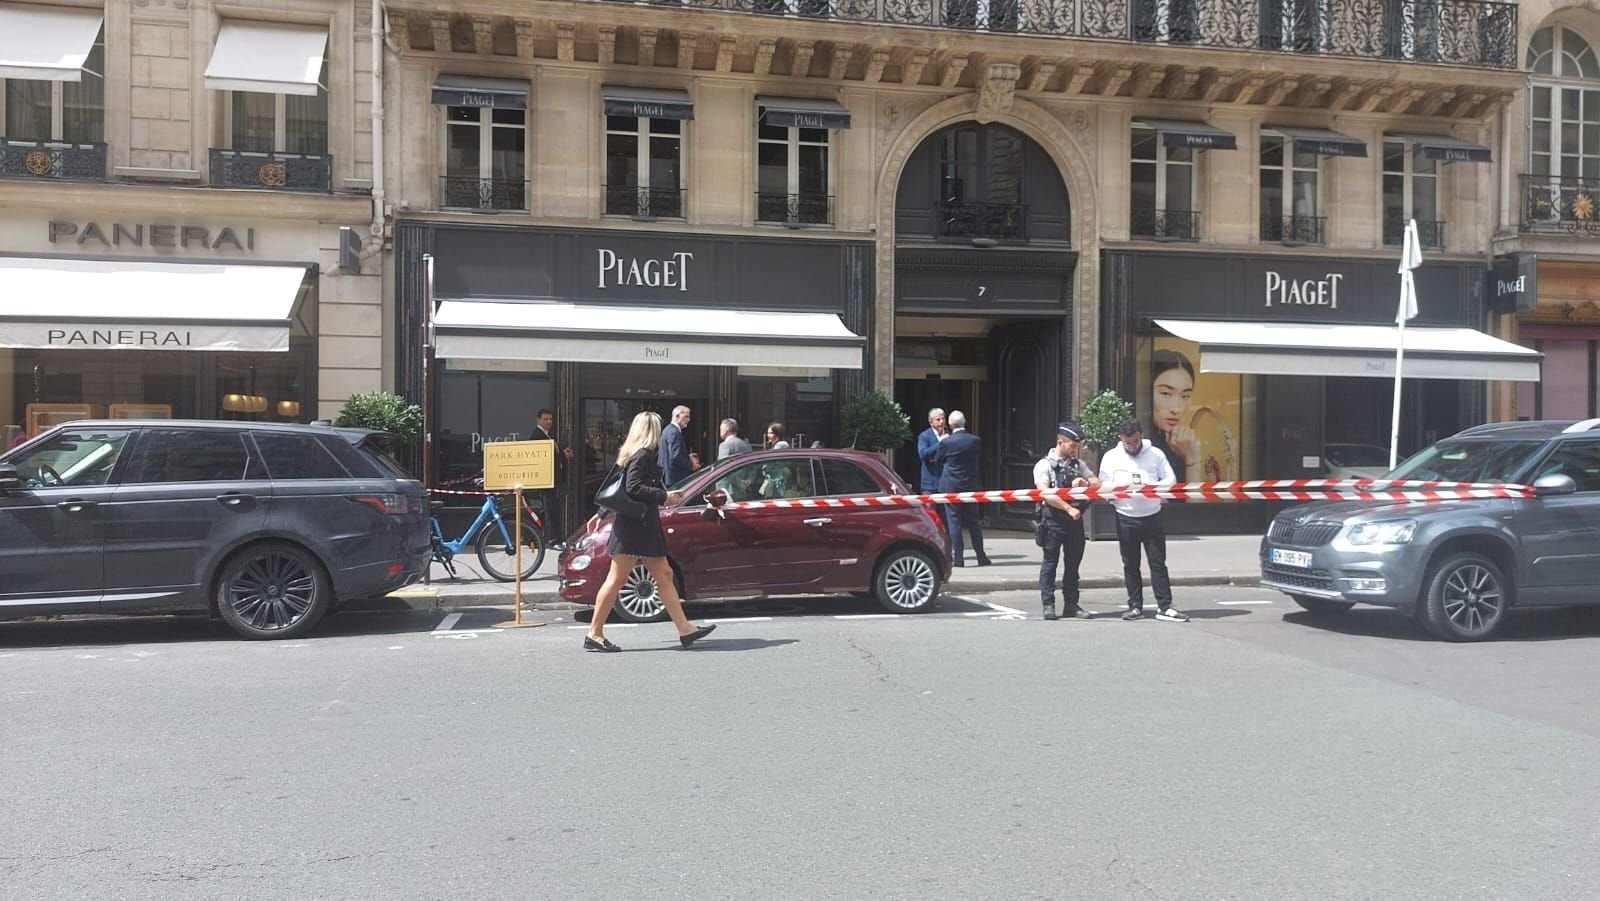 Paris (IIe), rue de la Paix, août dernier. Deux hommes et une femme avaient attaqué cette bijouterie en début d'après-midi. Le butin avait été estimé entre 10 et 15 millions d’euros.